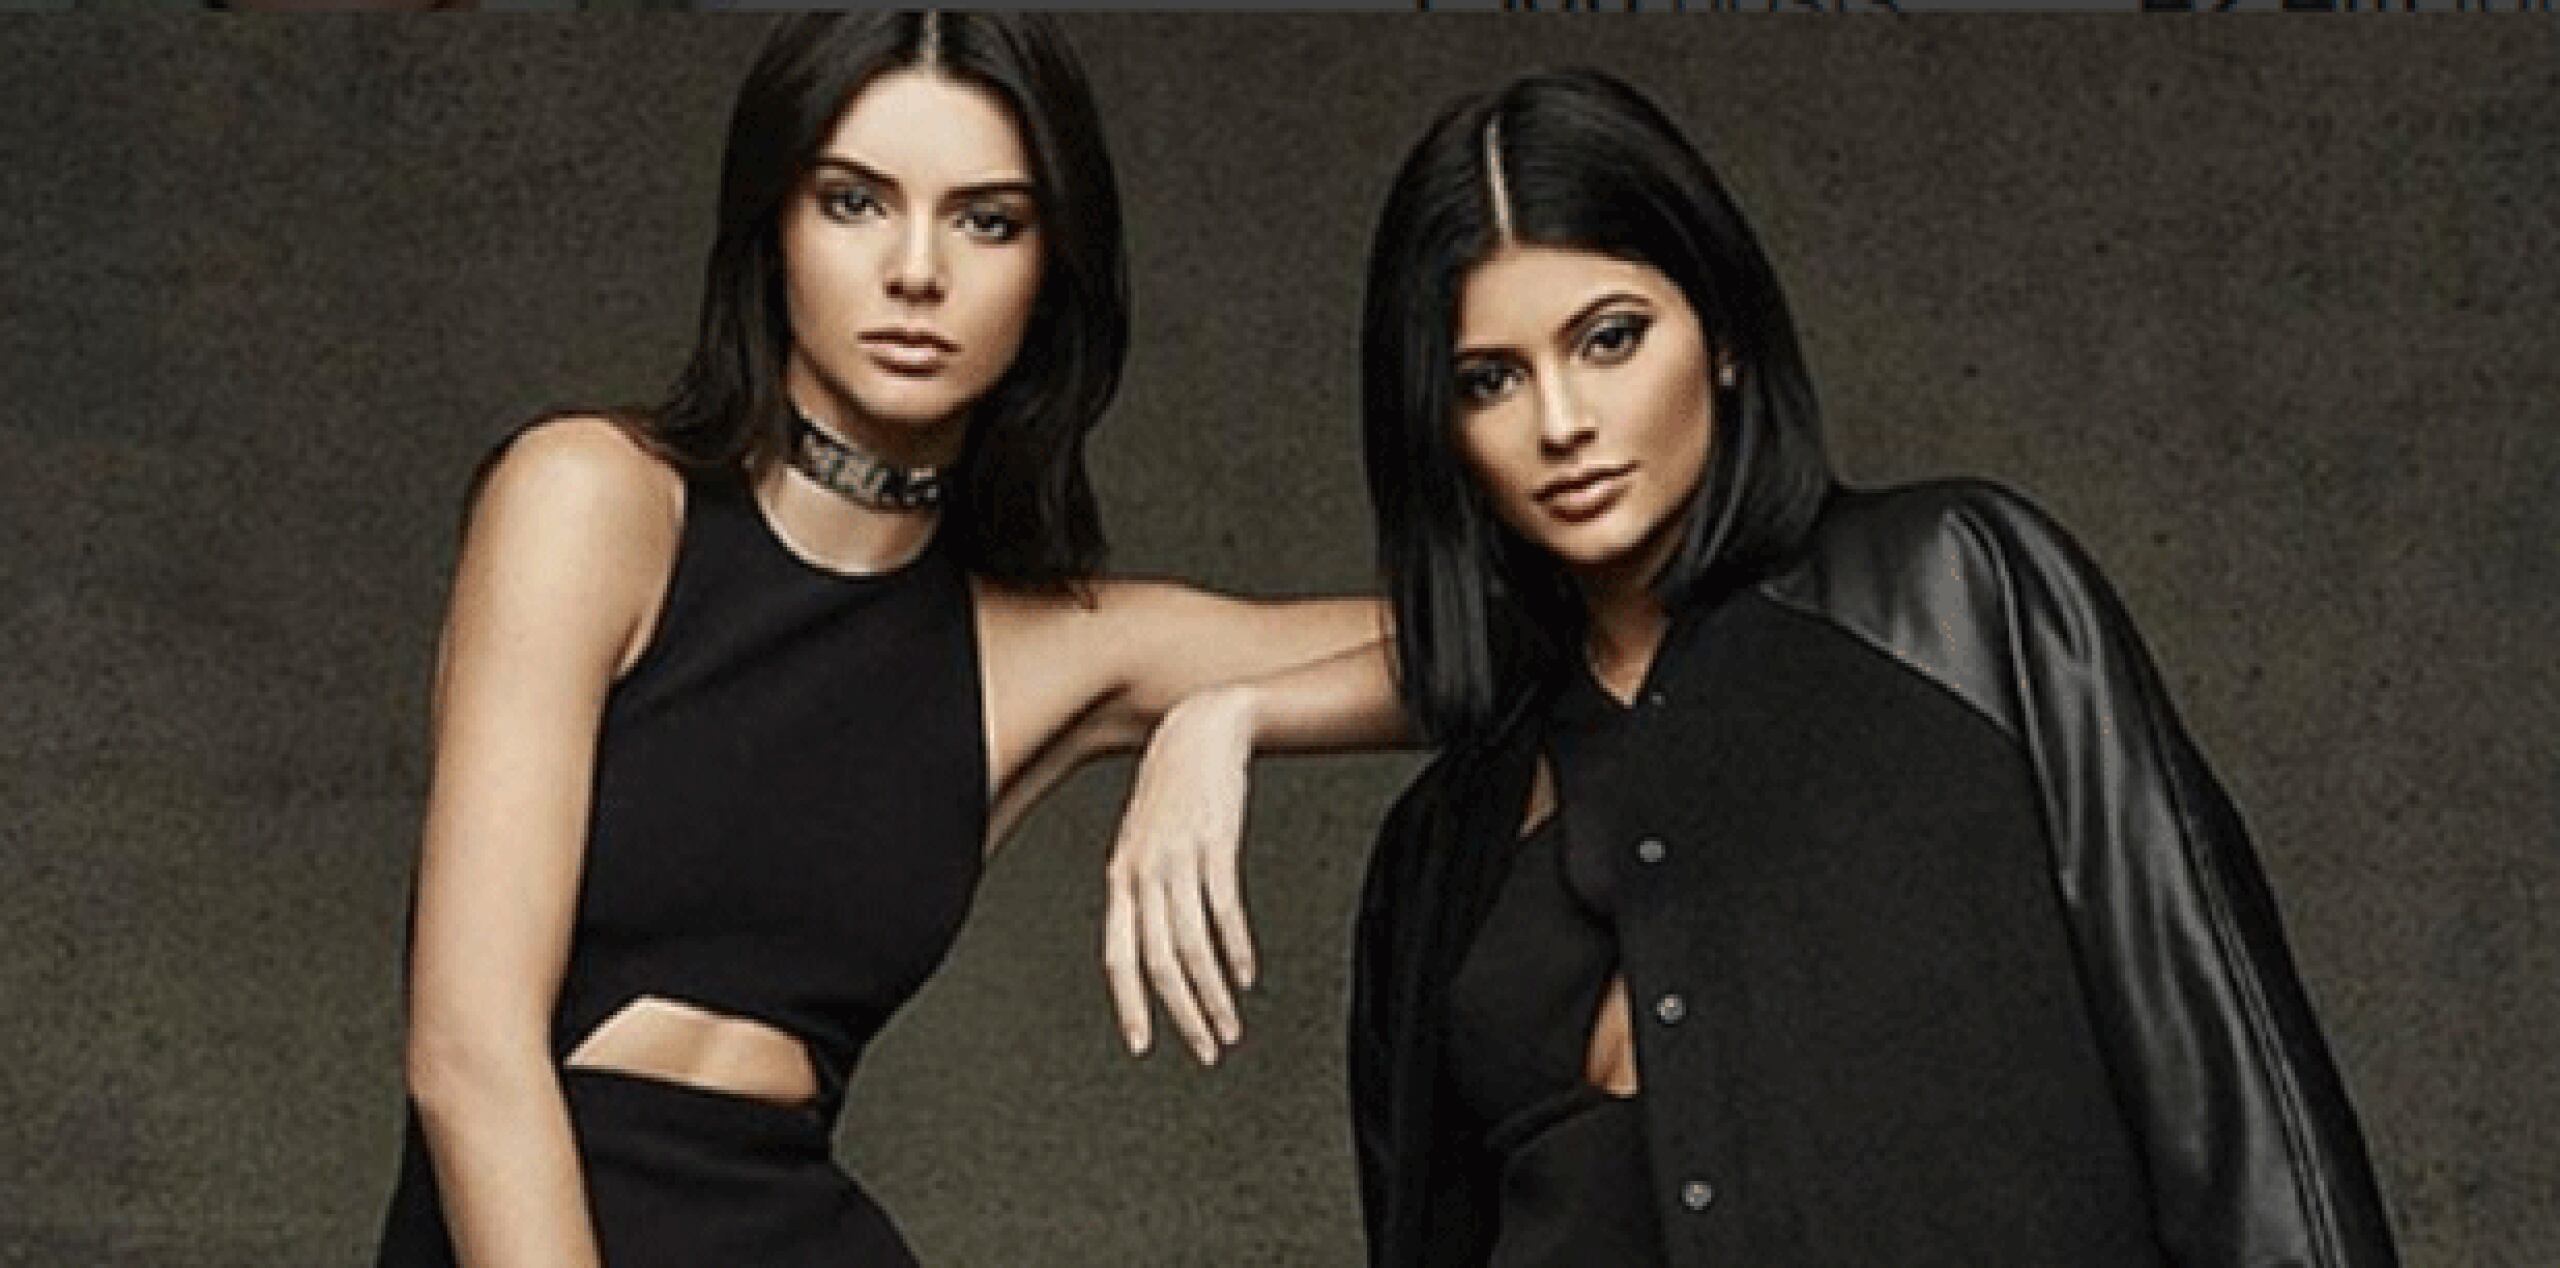 Las menores integrantes del clan Kardashian-Jenner, según han reseñado algunos medios, están enojadas entre sí desde hace varios meses en un duelo por la atención mediática y la fama. (Instragram)